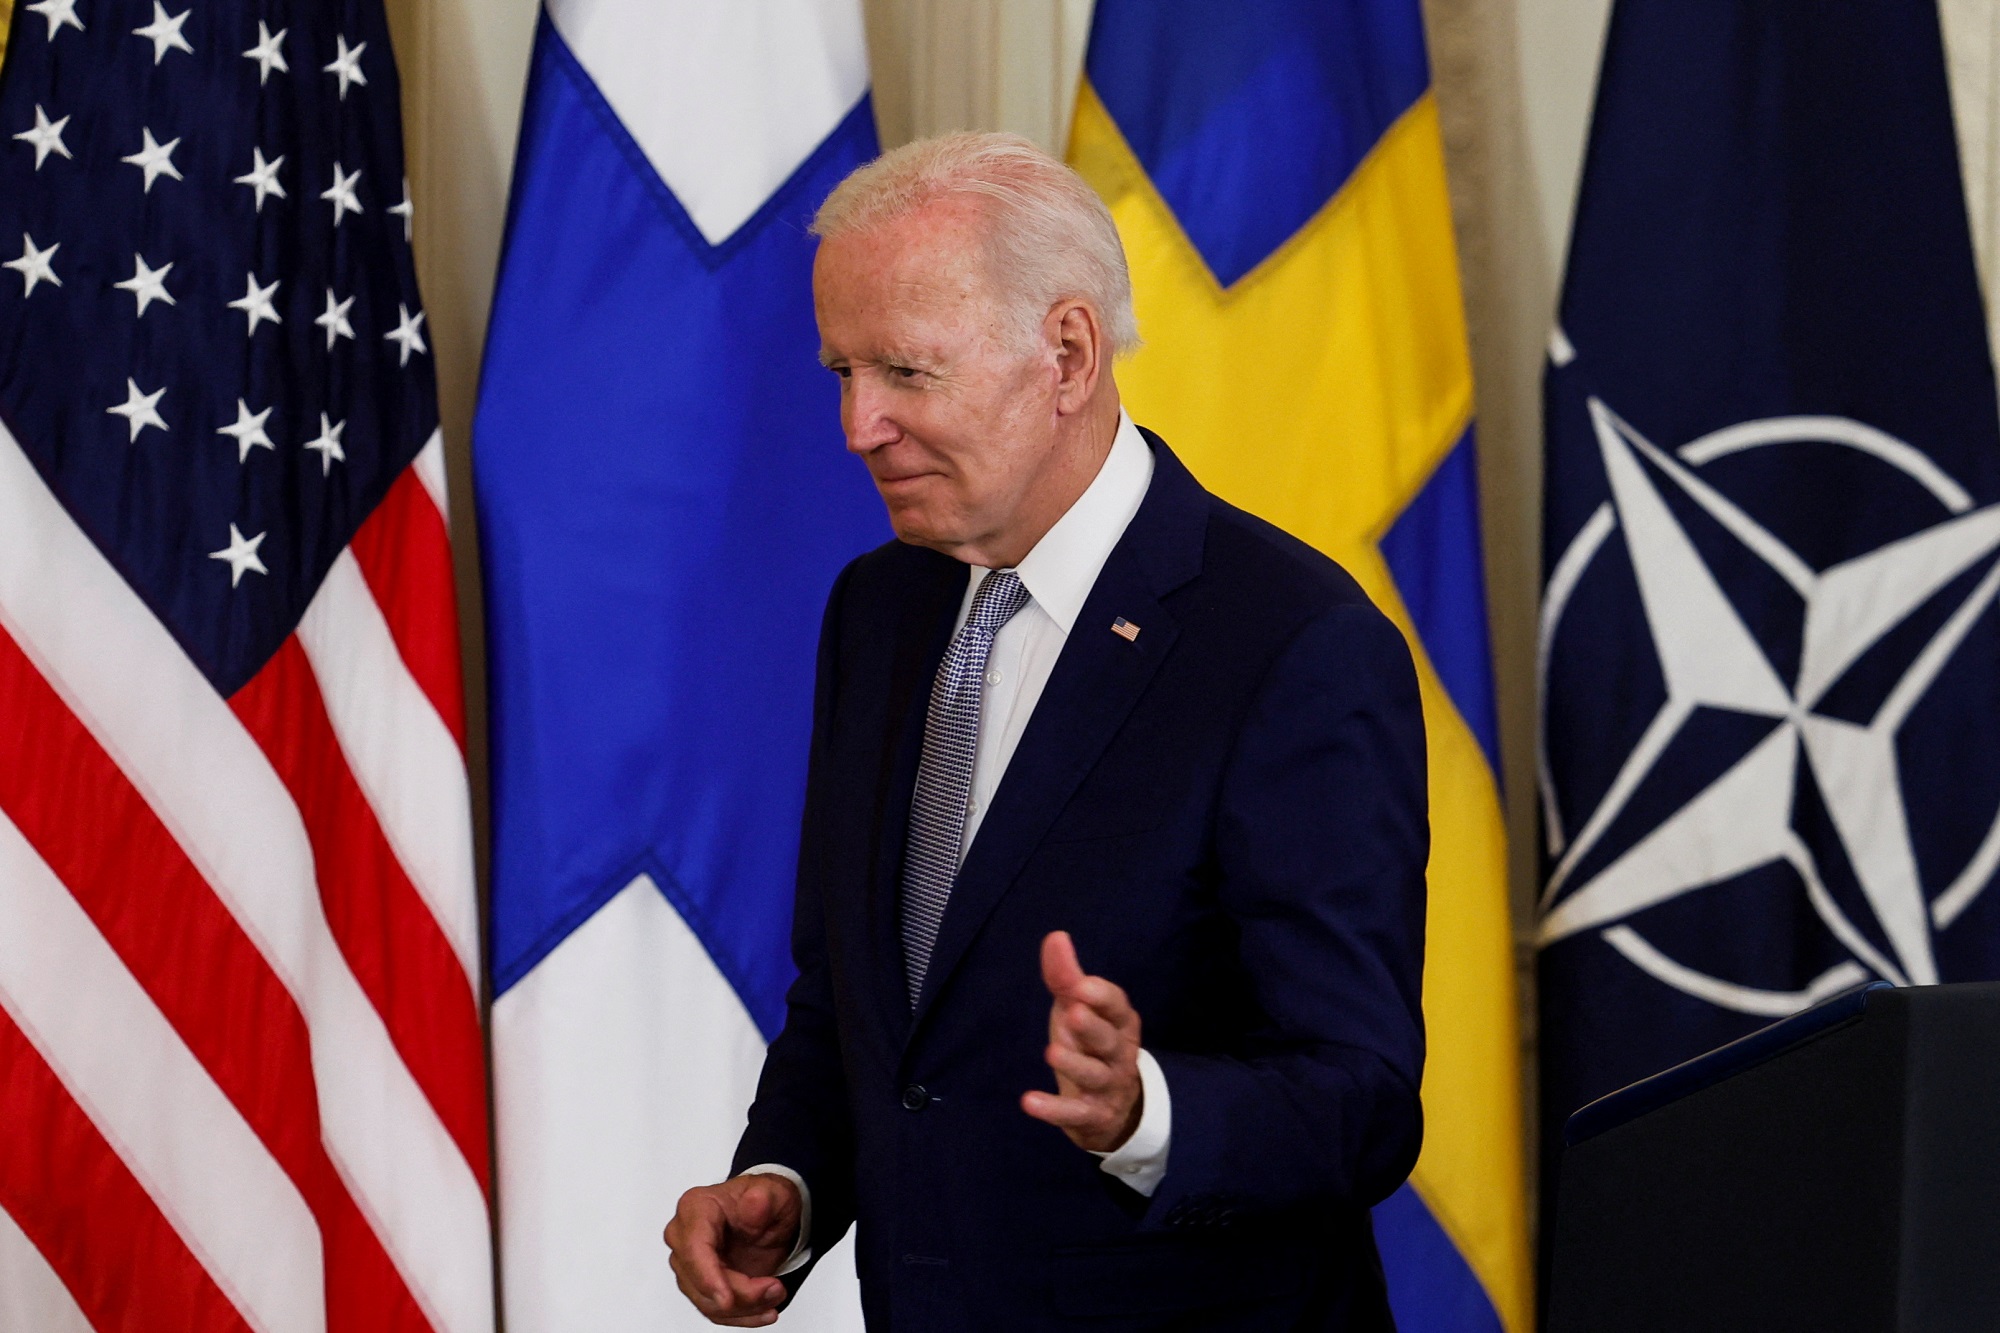 El presidente de Estados Unidos, Joe Biden, firma documentos que respaldan la adhesión de Finlandia y Suecia a la OTAN, en la Casa Blanca en Washington, Estados Unidos. -Reuters